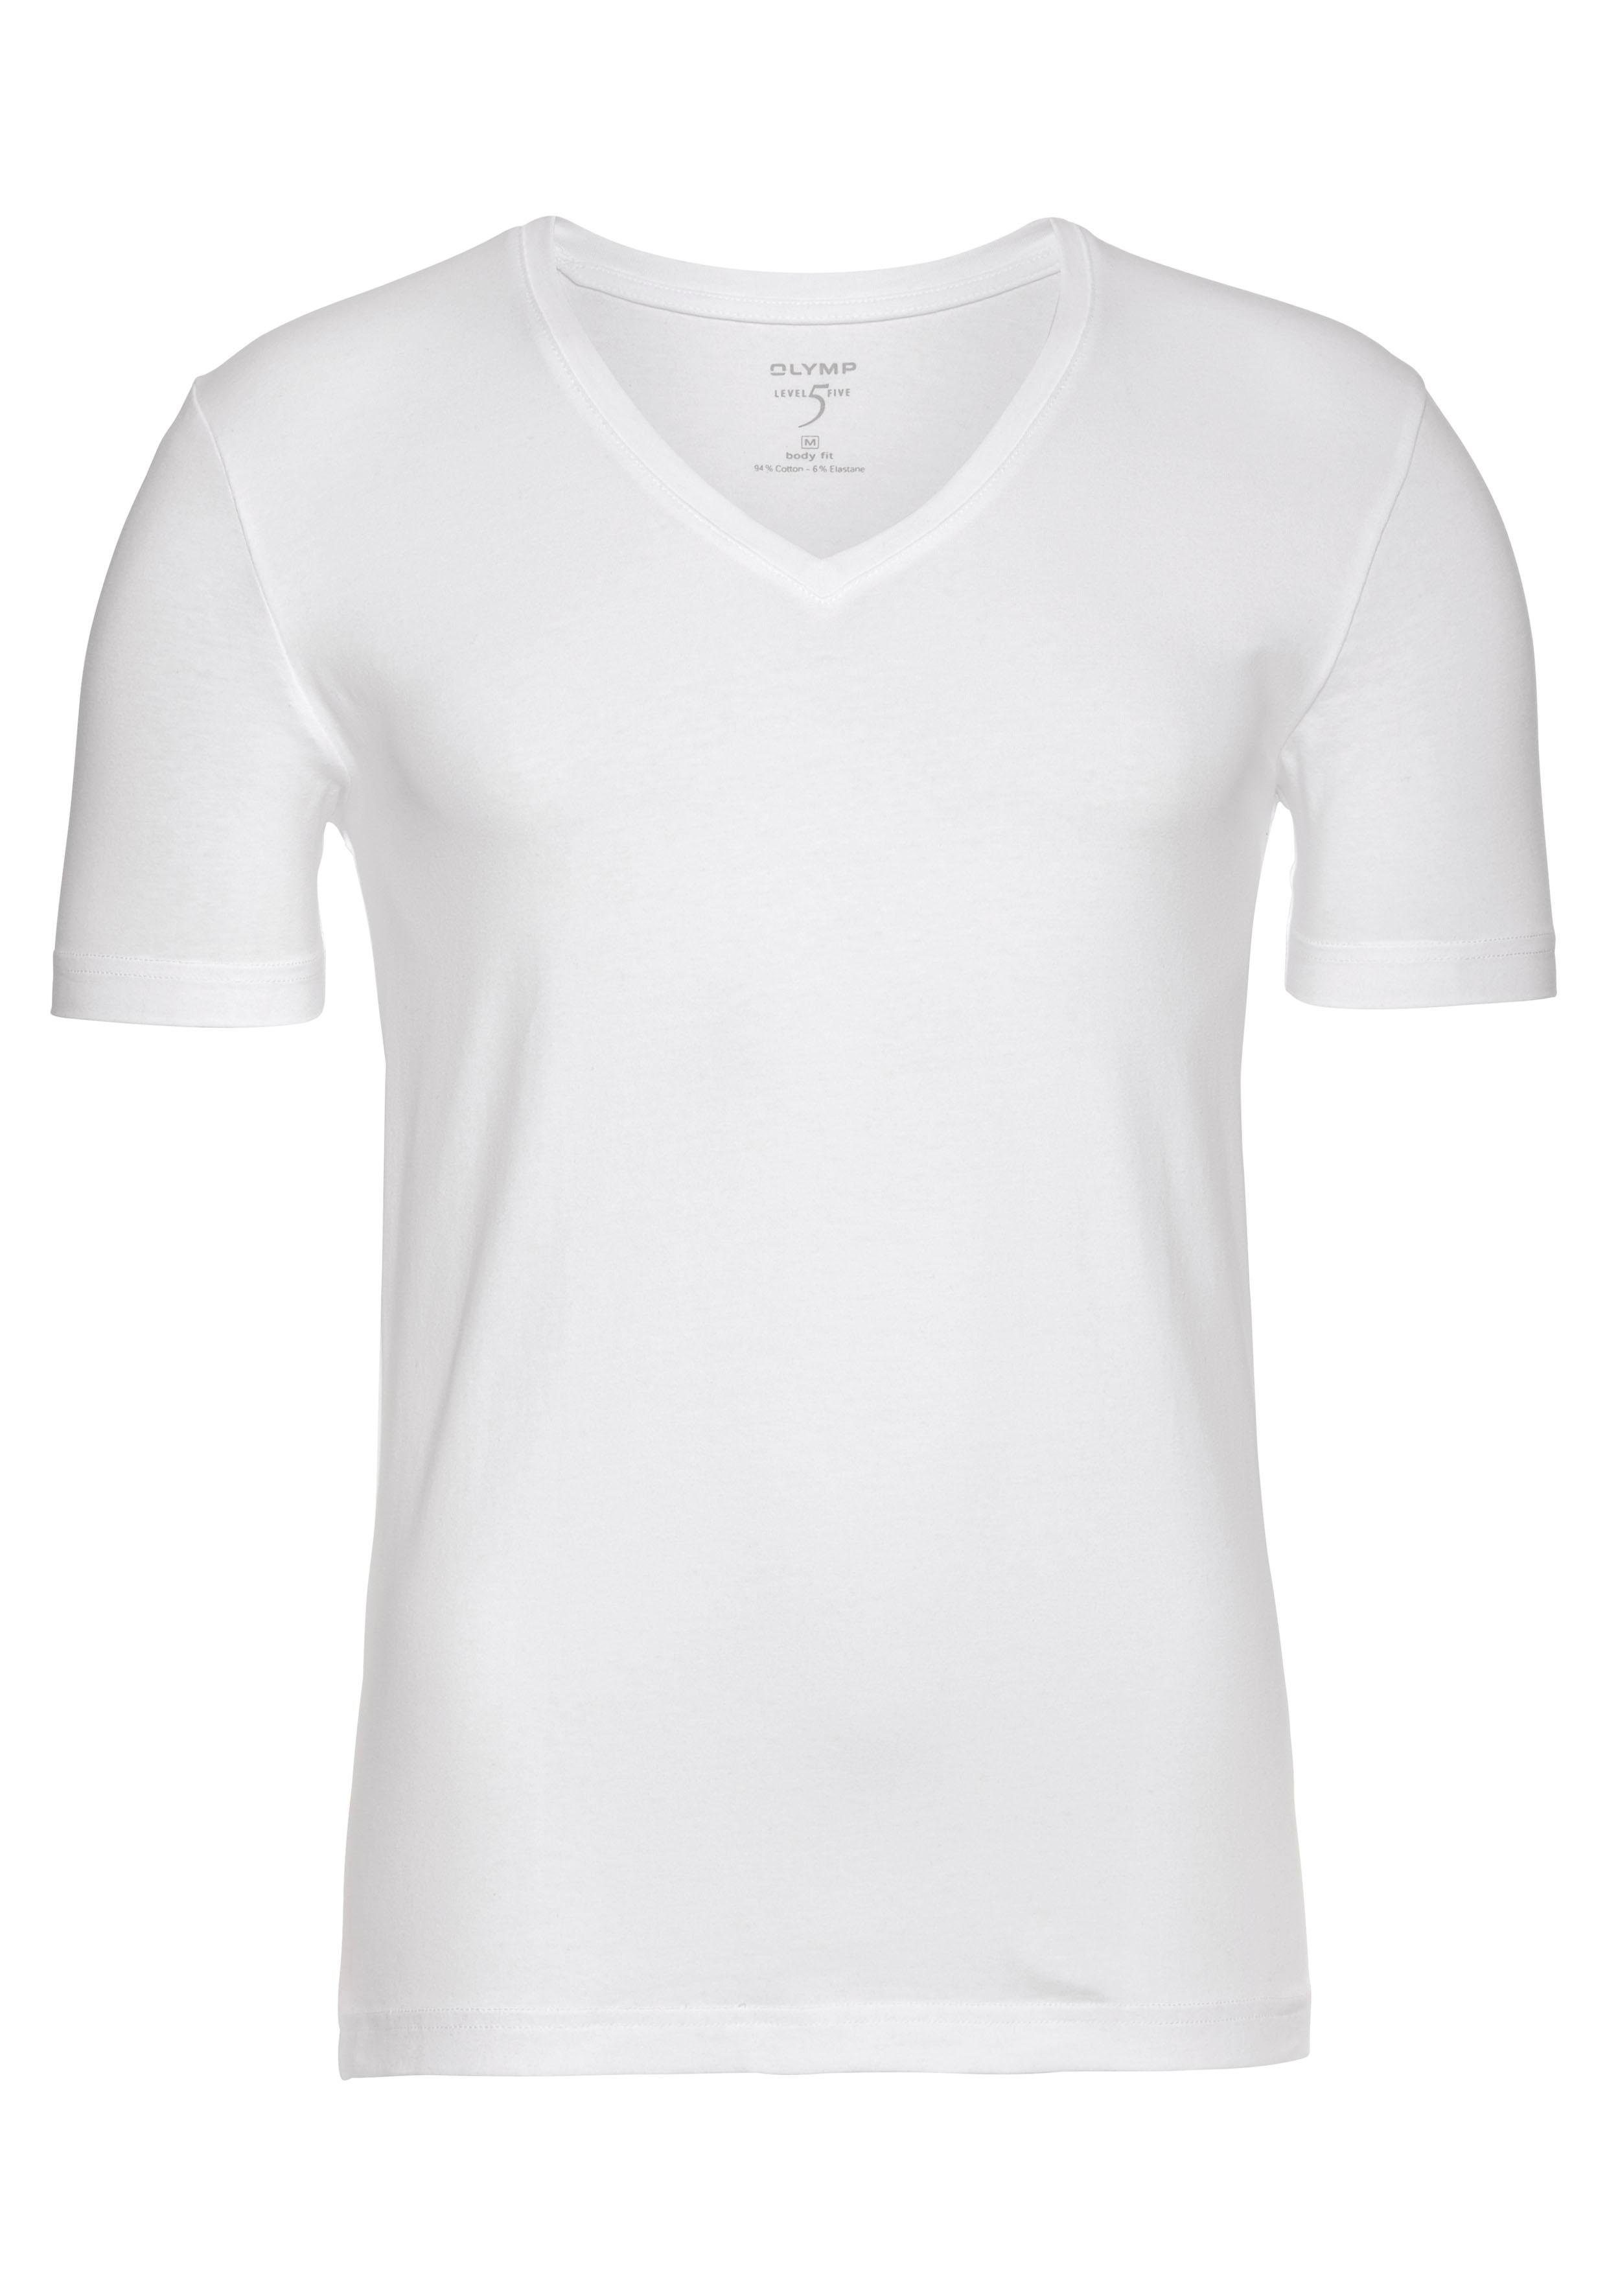 OLYMP T-Shirt Level Five body zum V-Ausschnitt, fit weiß Ideal Unterziehen